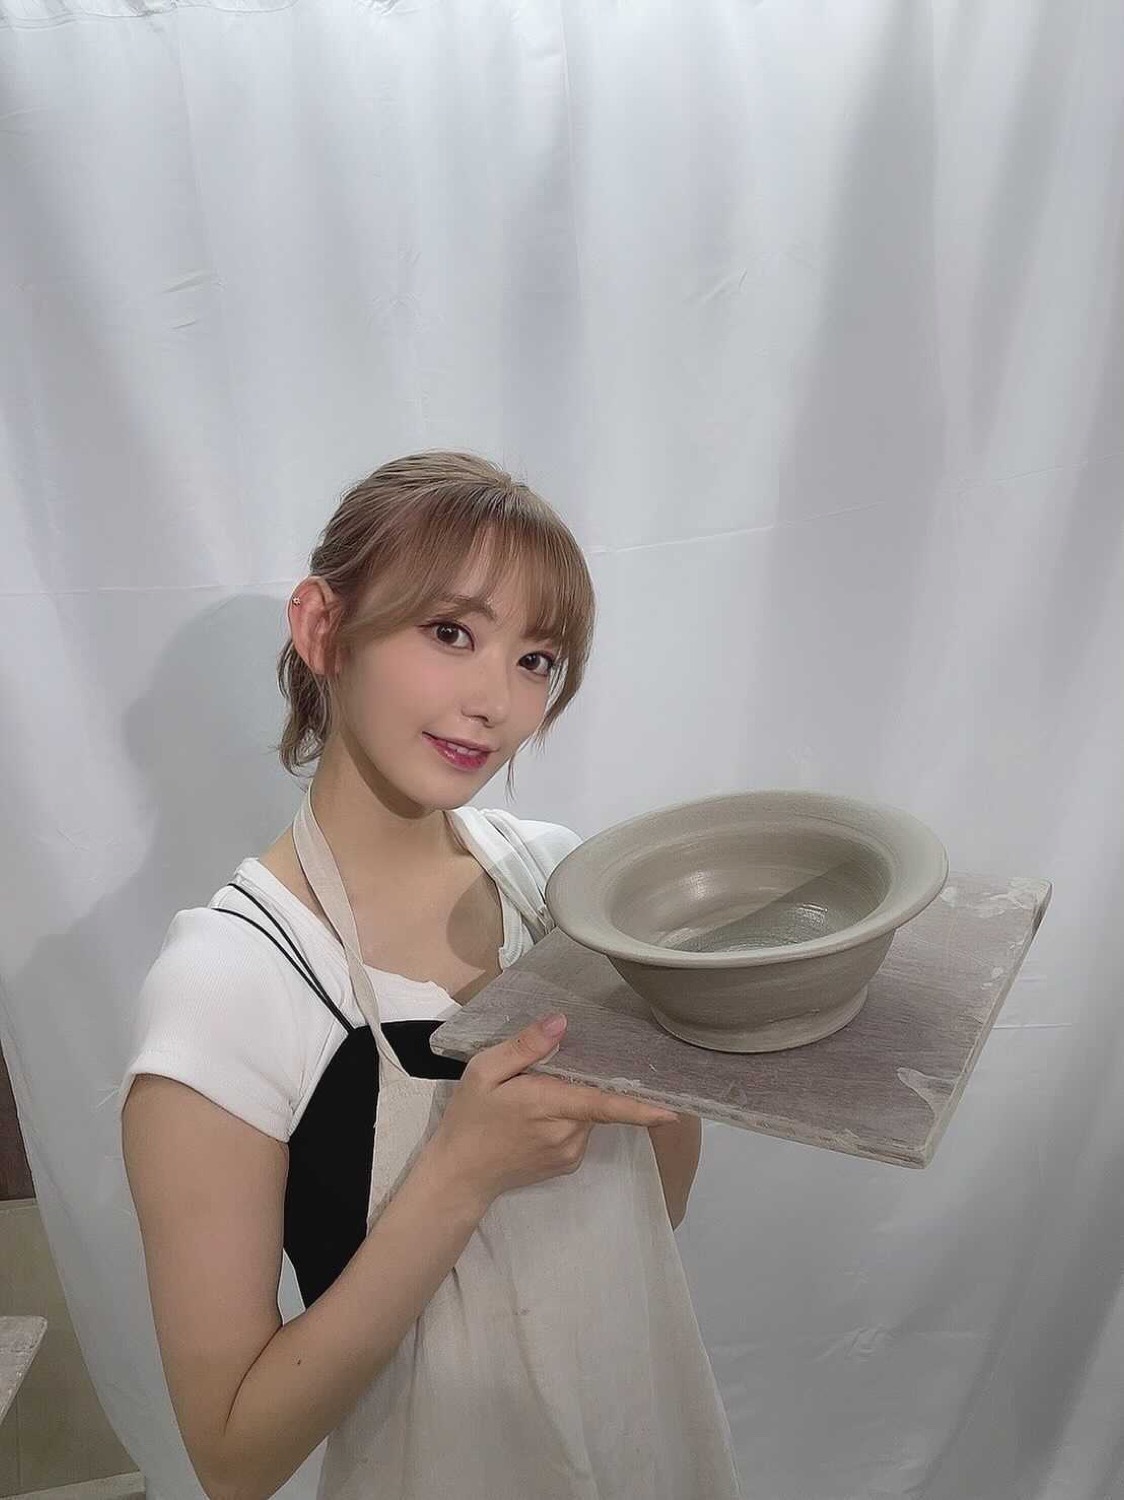 宫胁咲良首次在｢17LIVE」直播初体验制作陶瓷马克杯「真的好难啊！」 - itotii